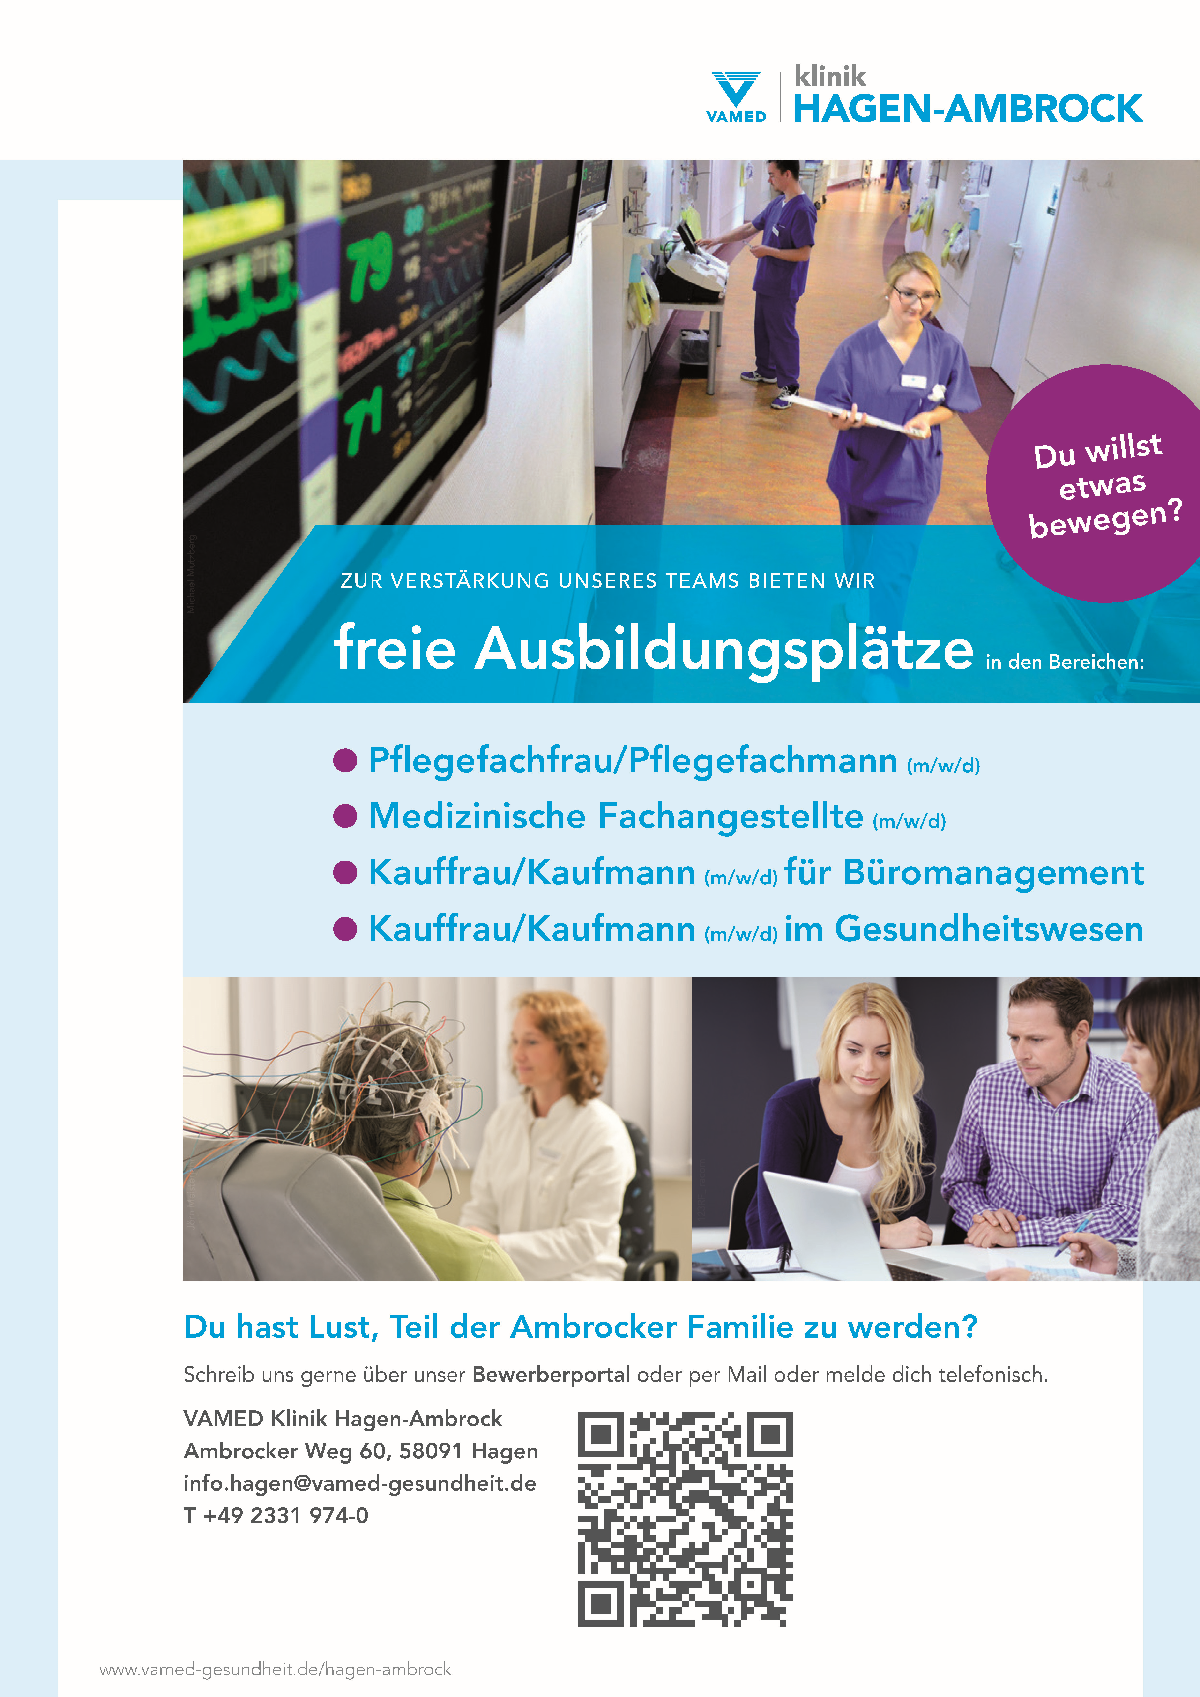 VAMED Klinik Hagen-Ambrock GmbH 